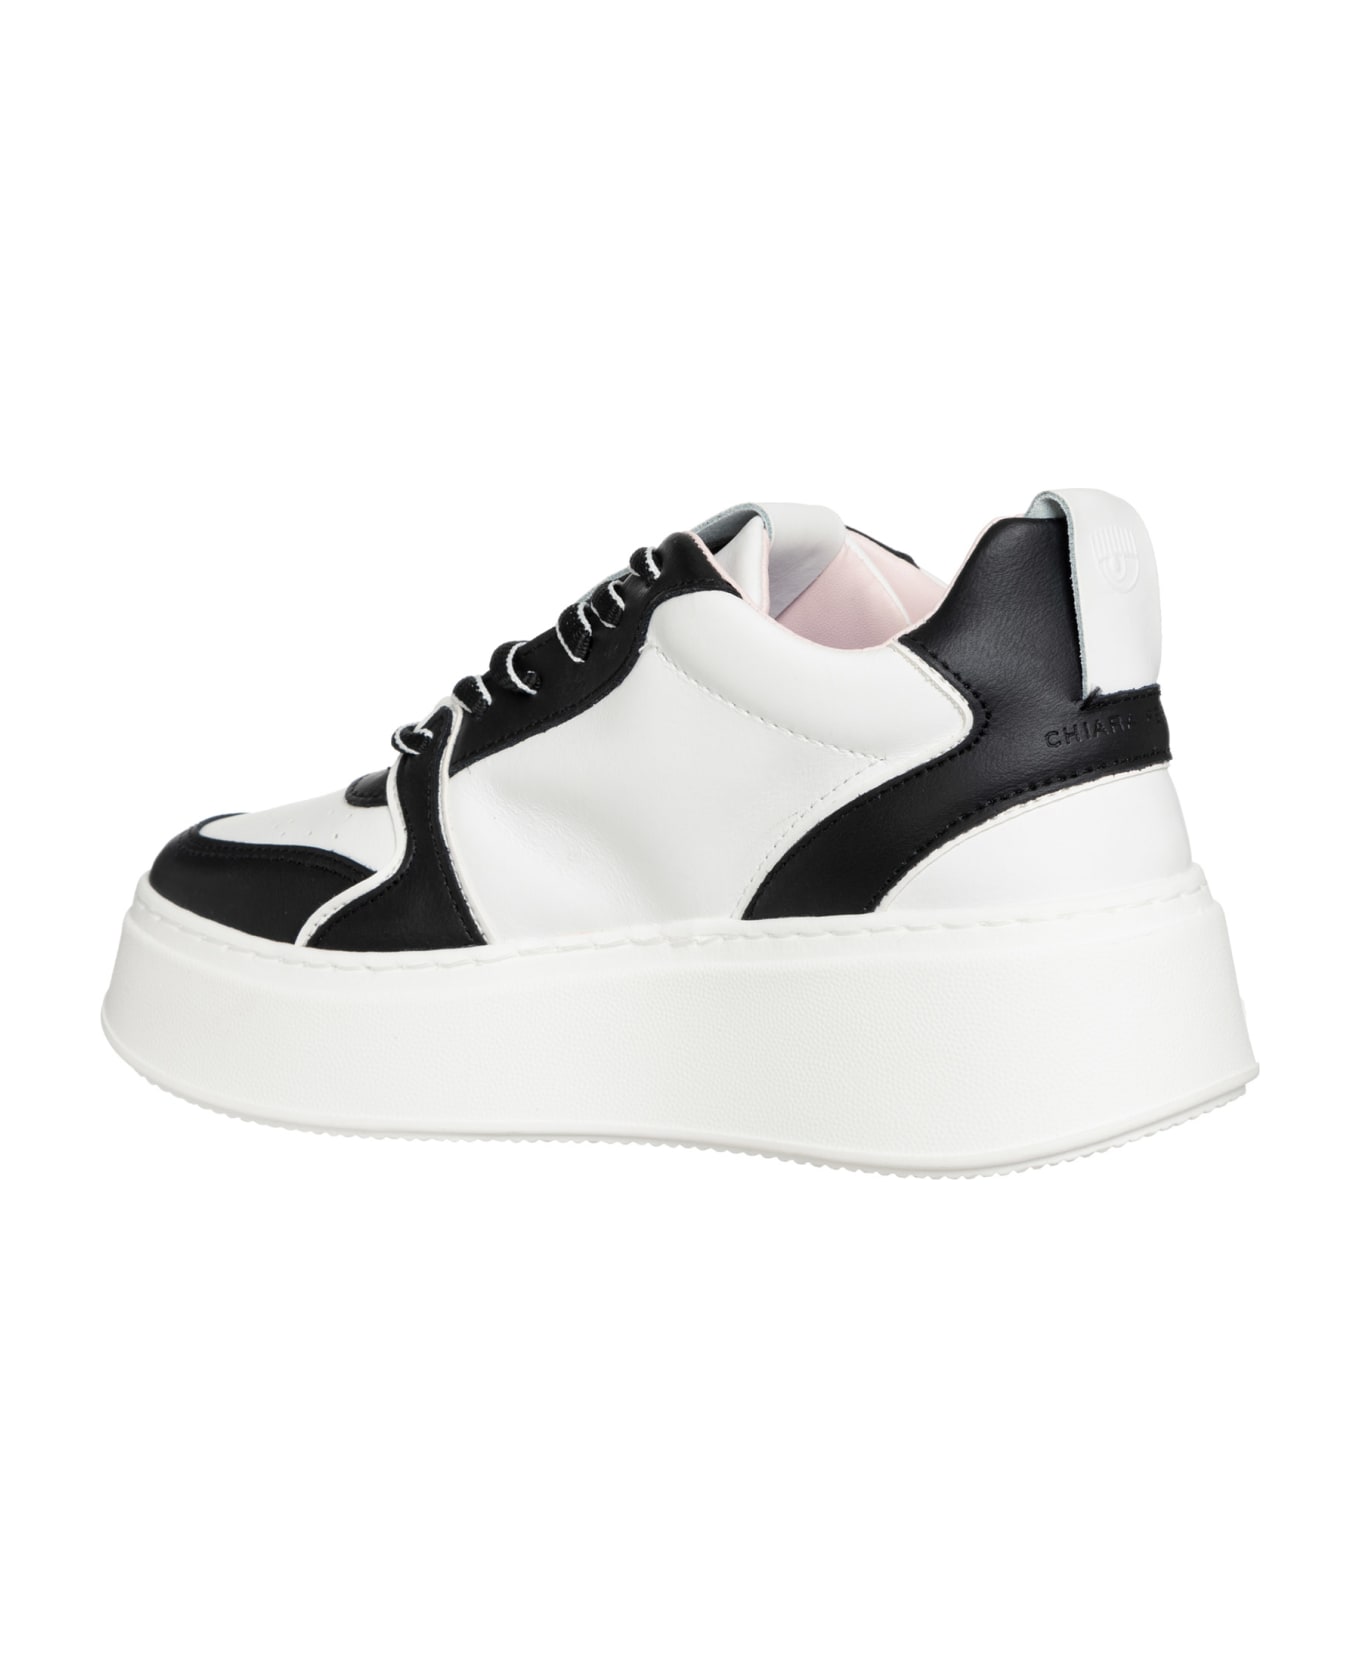 Chiara Ferragni School Leather Sneakers Chiara Ferragni - WHITE/BLACK ウェッジシューズ